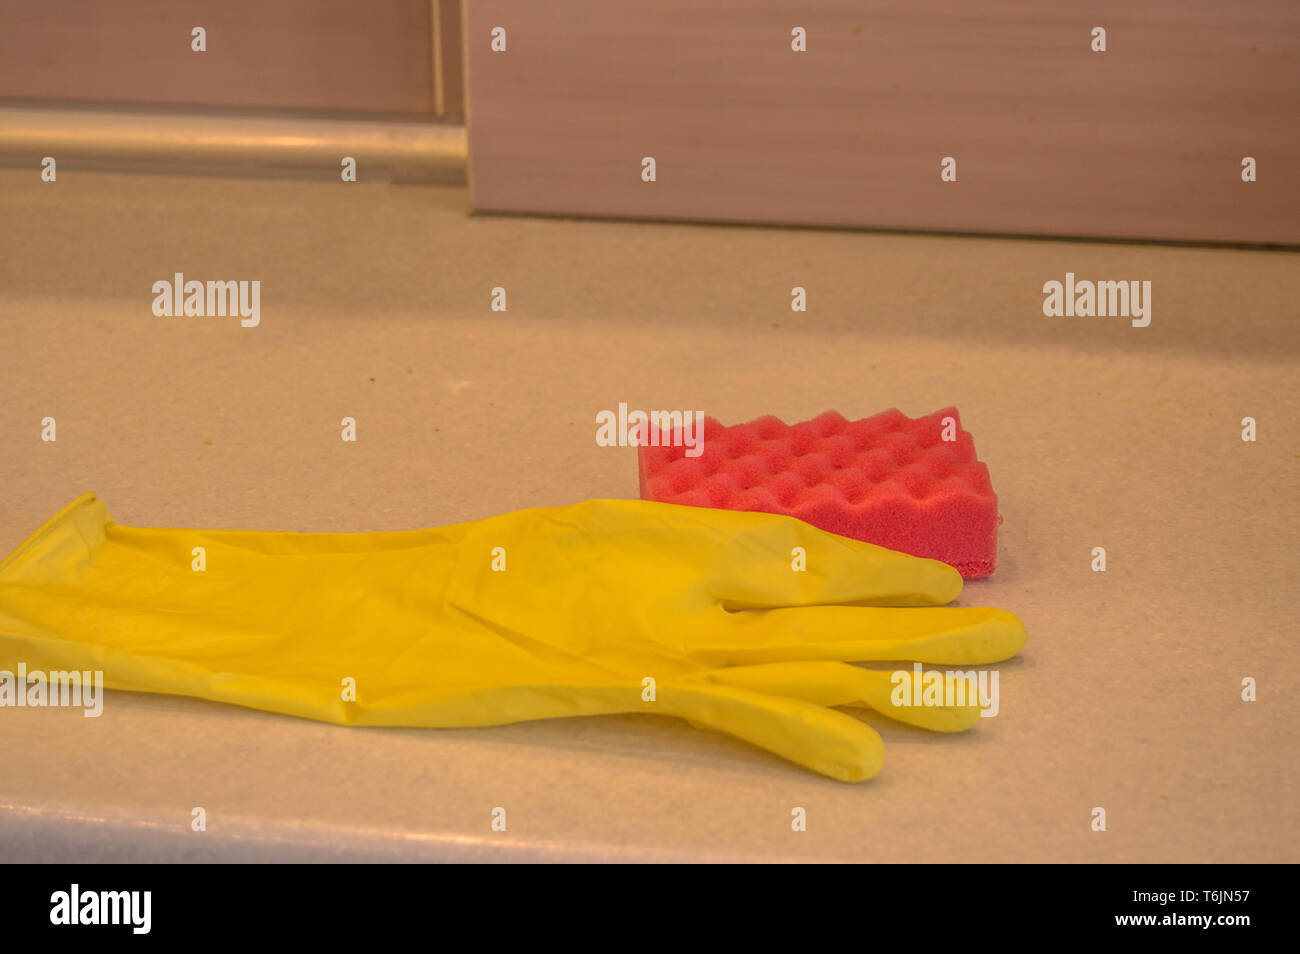 La limpieza de los utensilios de cocina guantes de goma y esponja de  mentira de la suciedad de la superficie de la mesa, el concepto de limpieza  copia el espacio, la luz